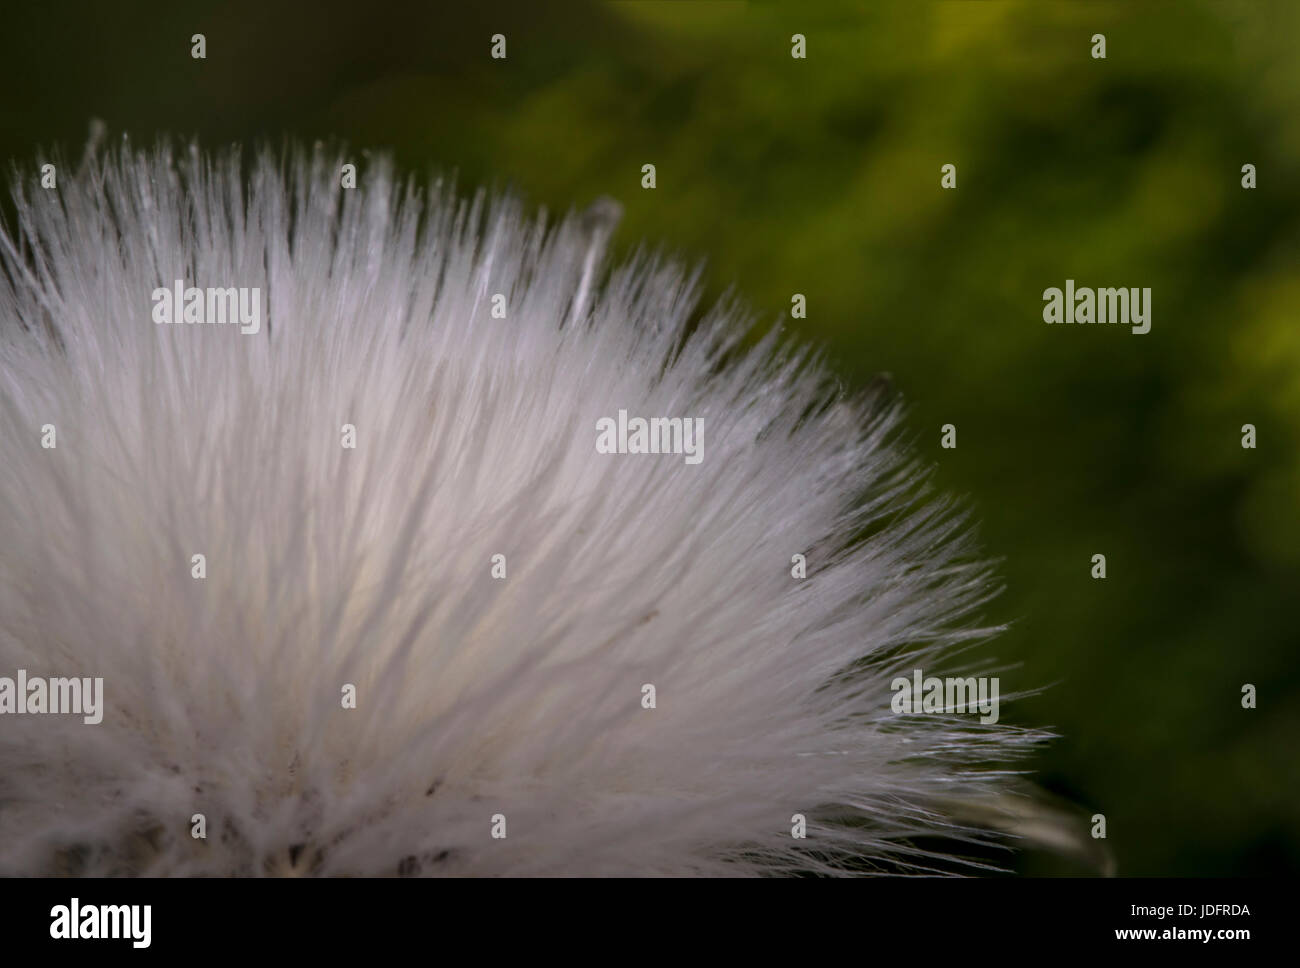 Petite fleur de coton blanc eriophorum dans la nature Banque D'Images